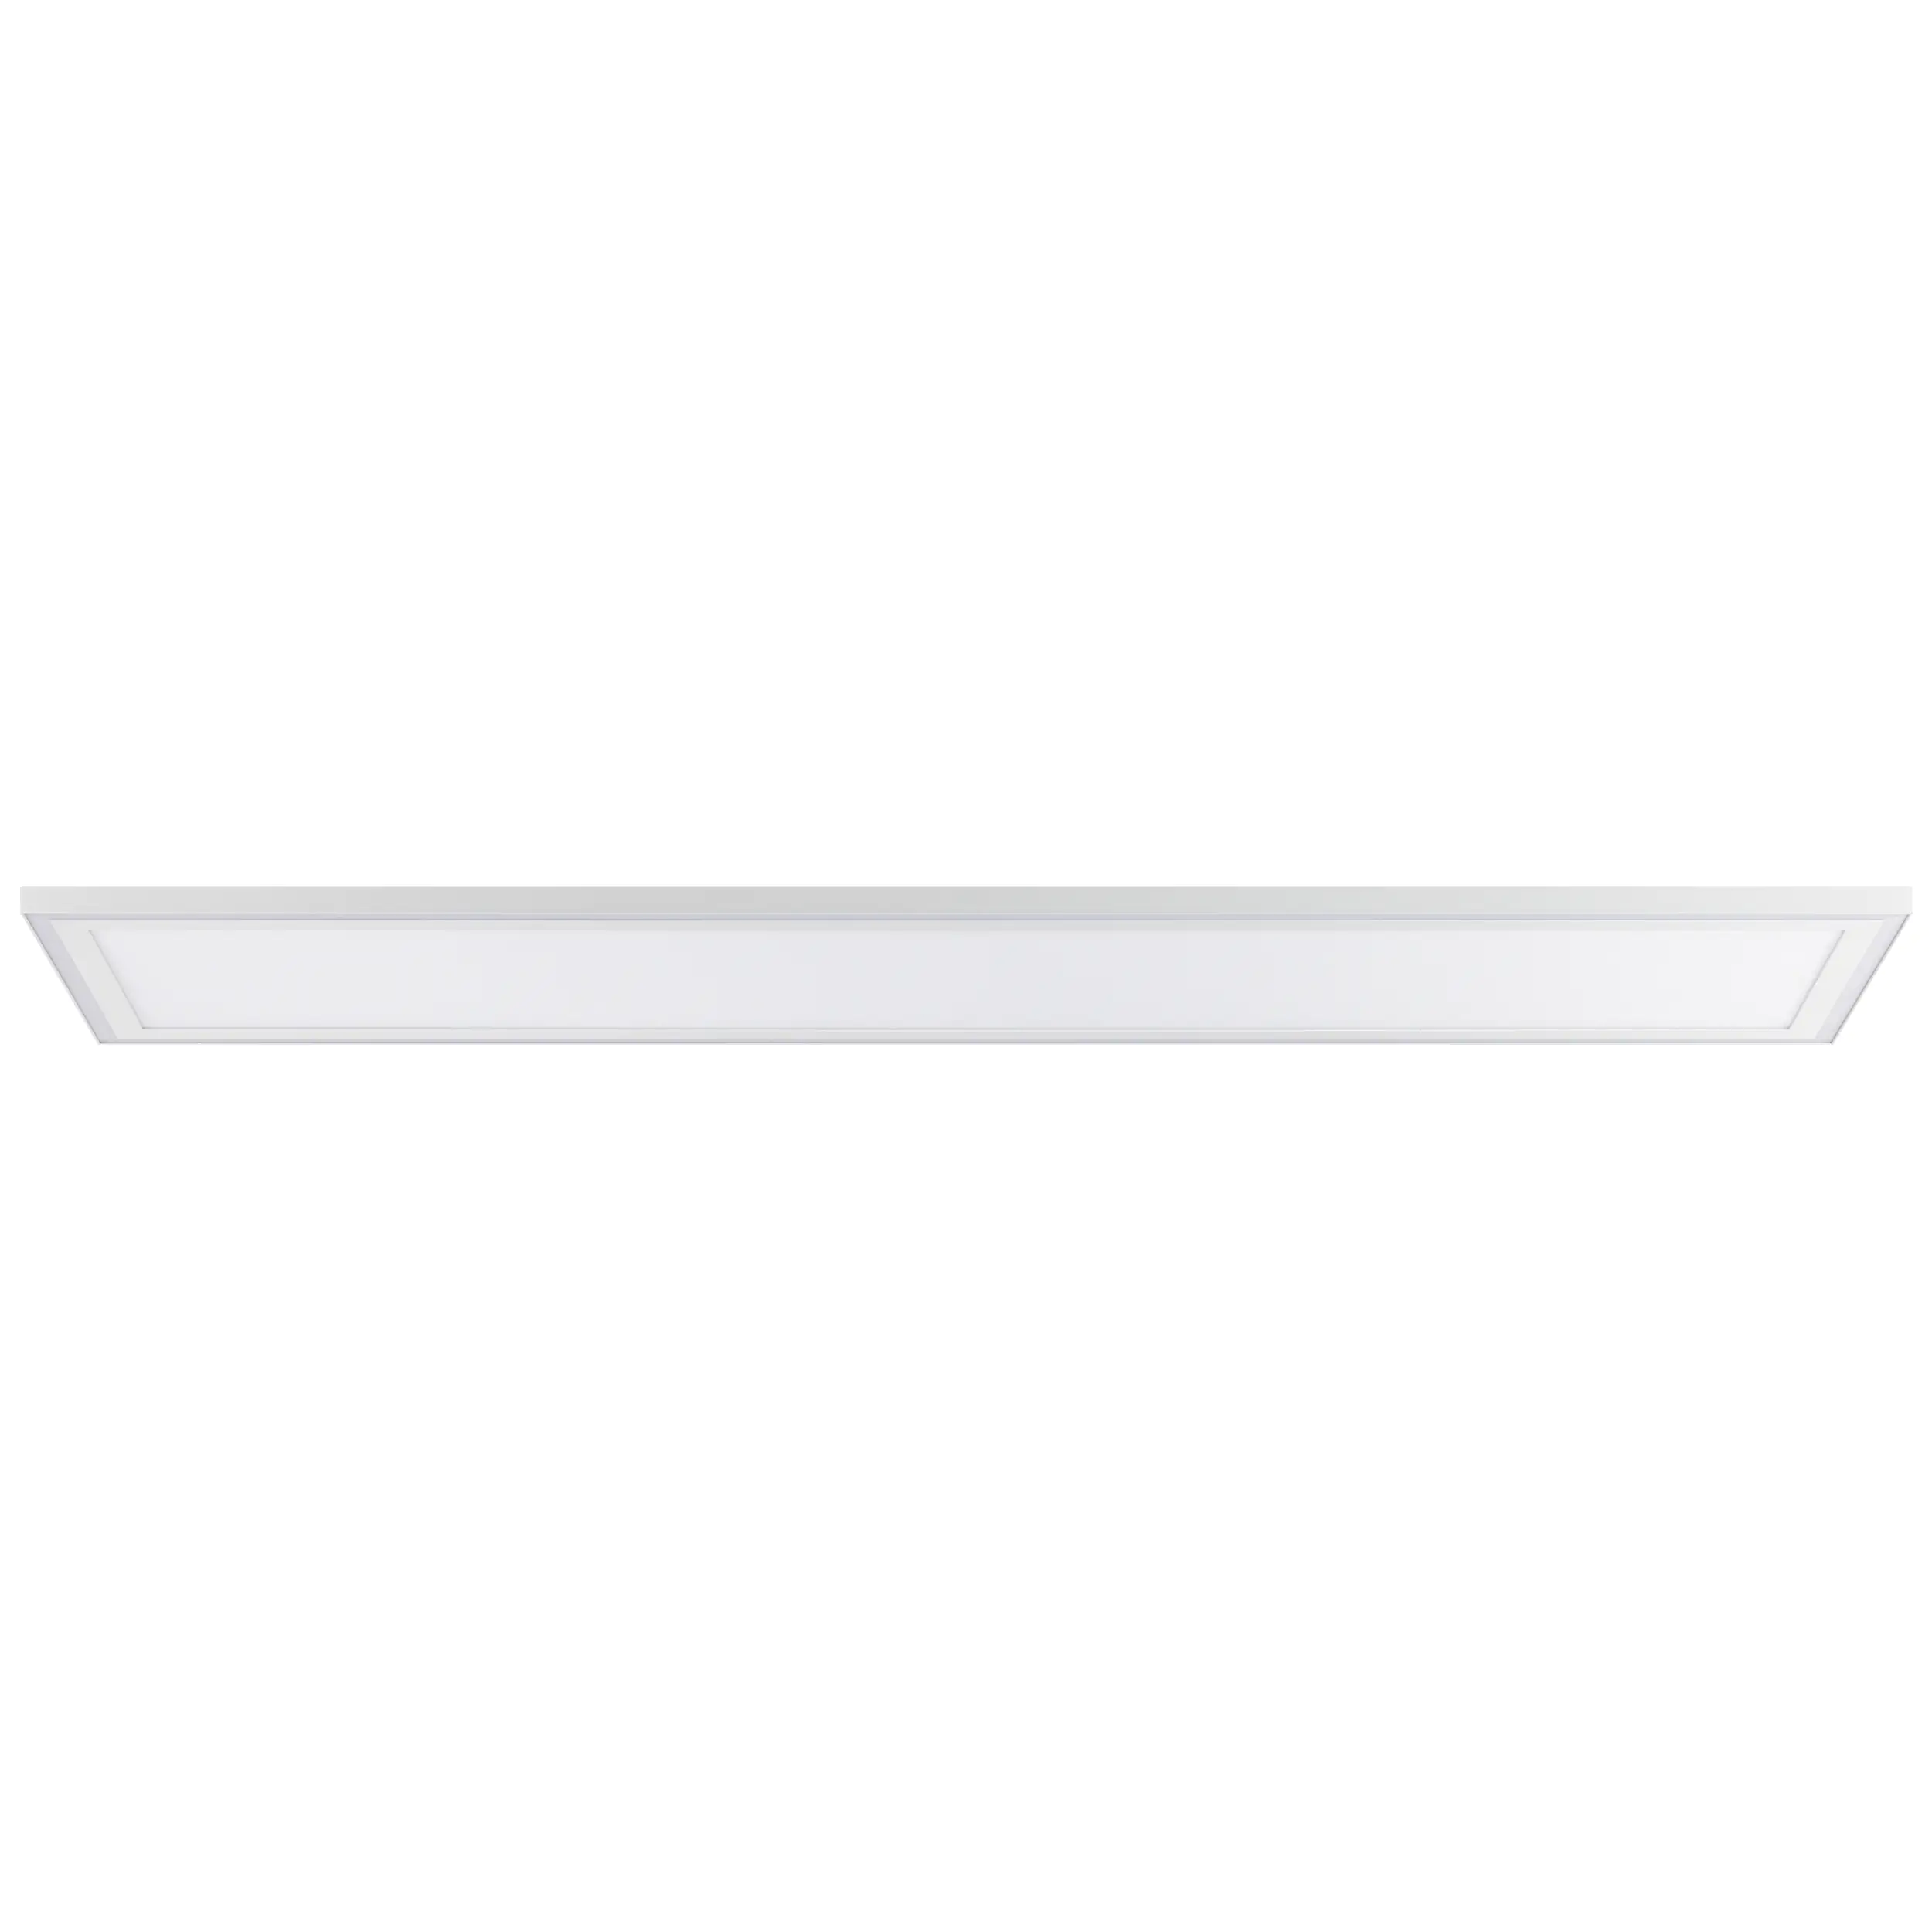 Brilliant LED Deckenleuchte Laurice weiß 120 x 30 cm 38 W kaufen | Globus  Baumarkt